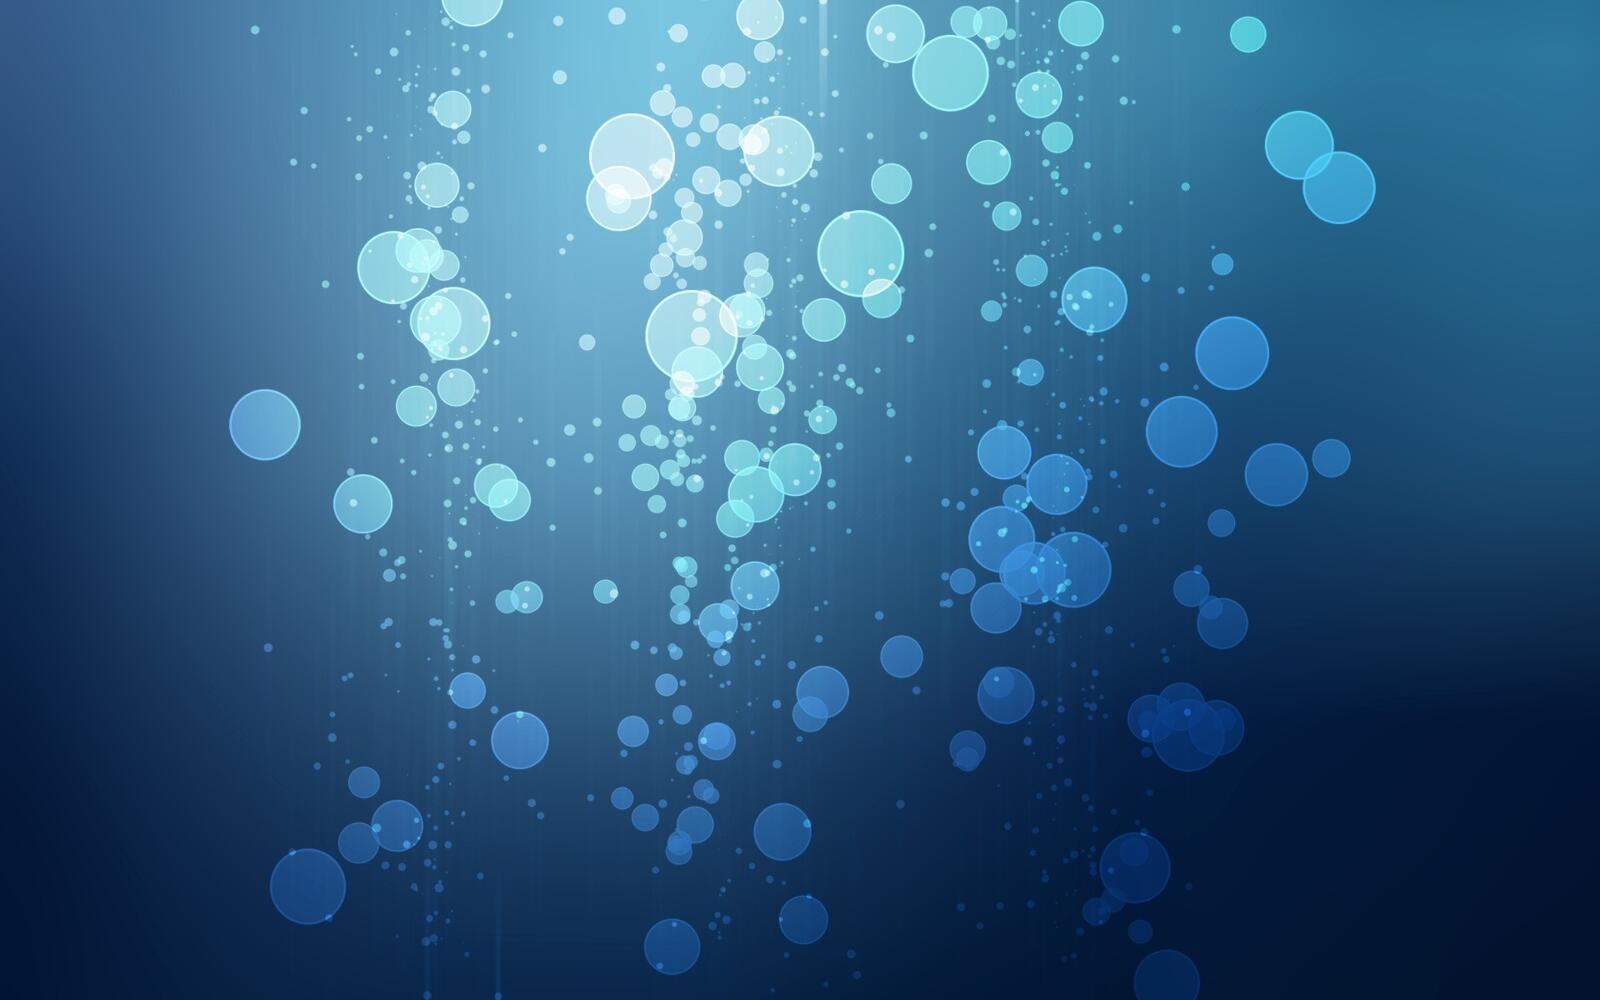 Бесплатное фото Картинка с абстрактными пузырями синего цвета